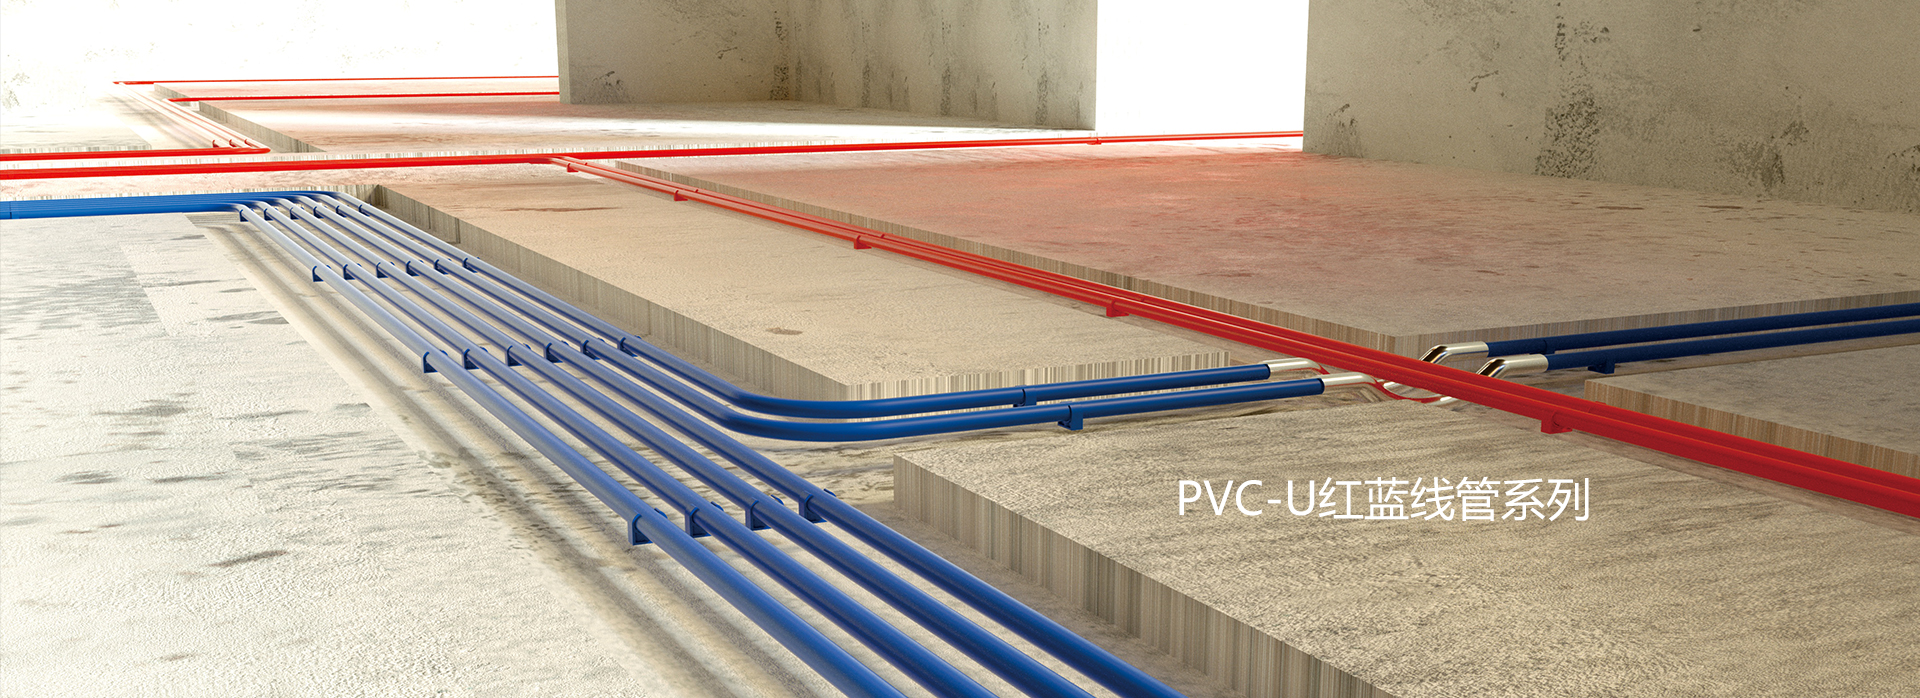 PVC-U红蓝线管系列